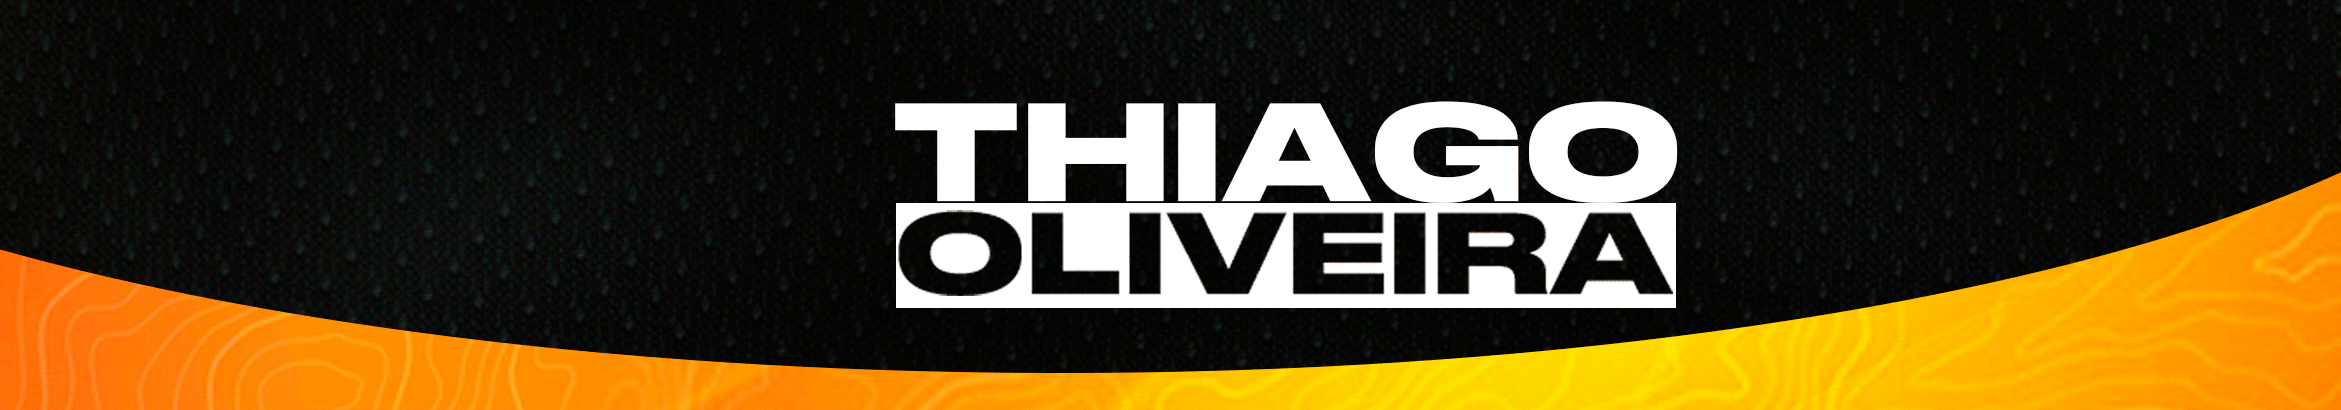 Thiago Oliveira's profile banner